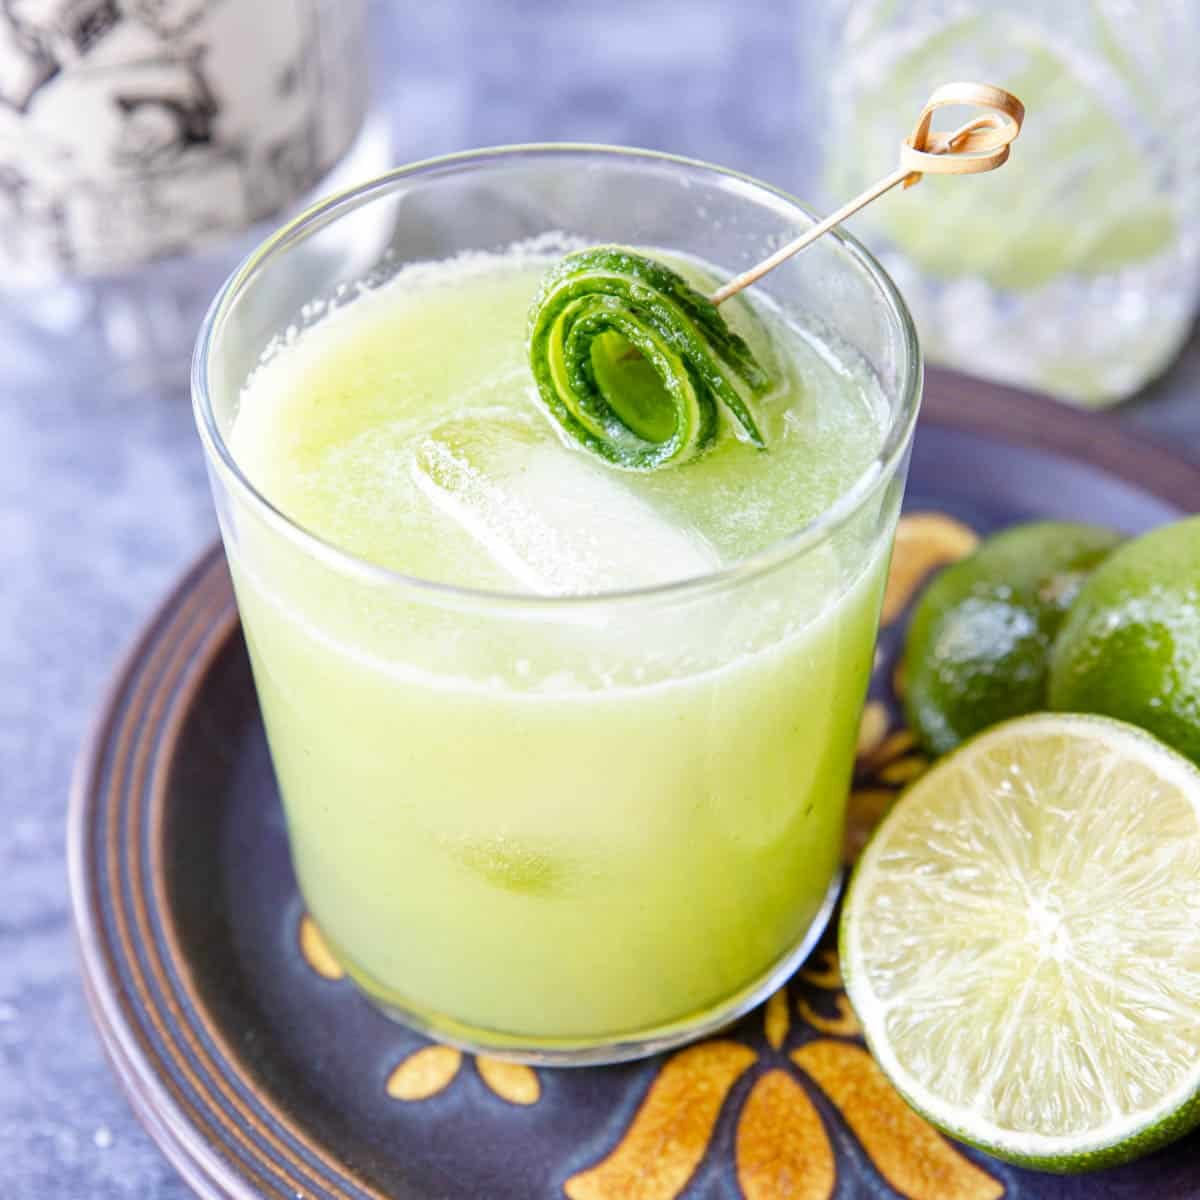 Cucumber margarita in a glass with a cucumber rosette garnish